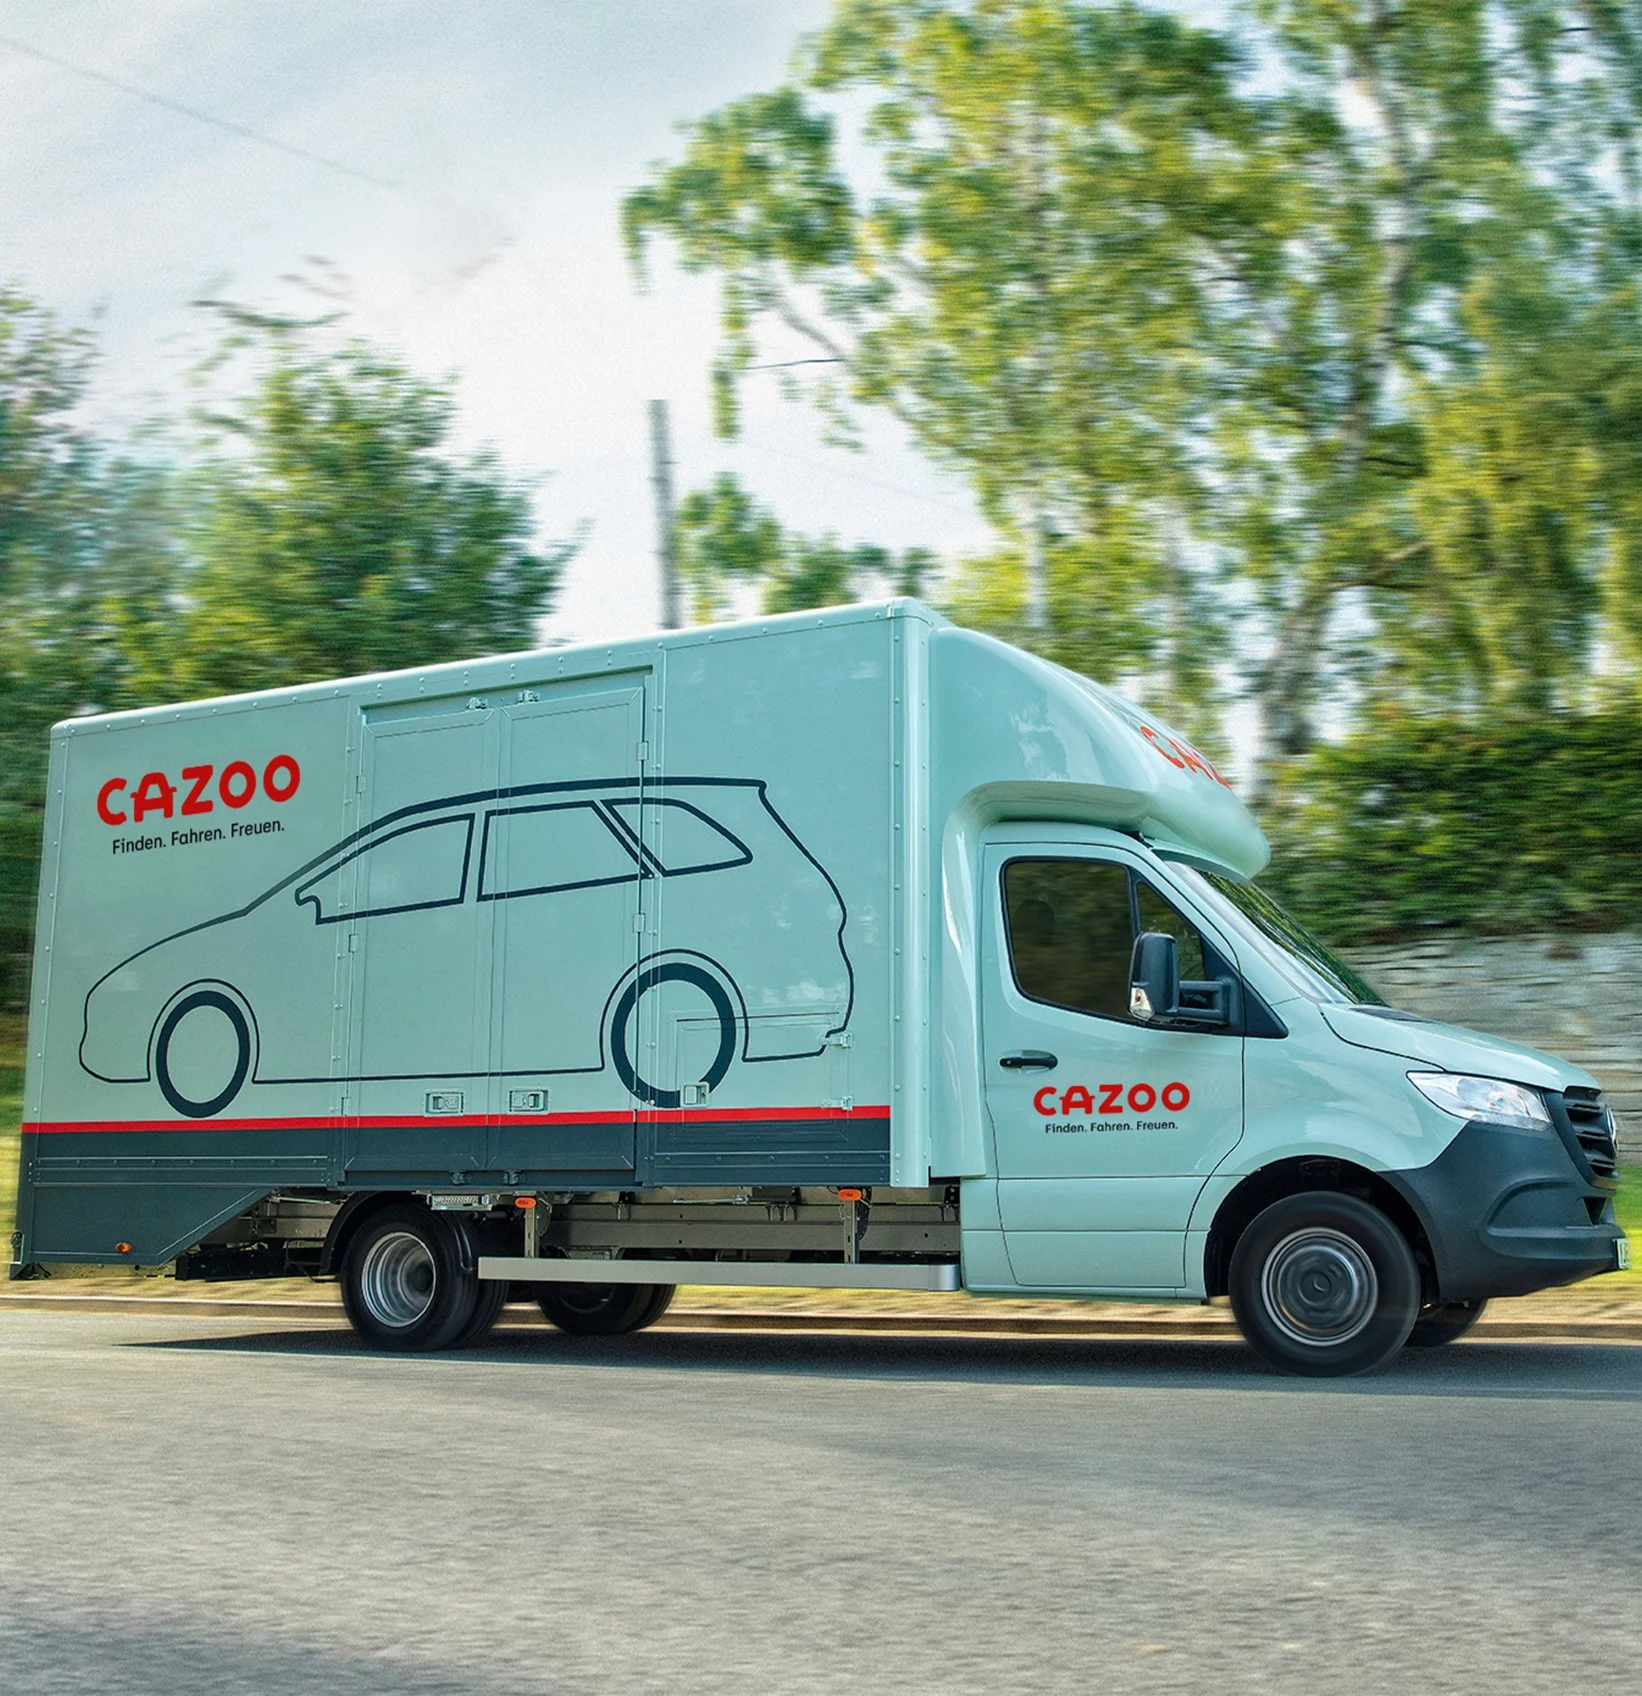 Cazoo liefert dein Auto kostenlos zu dir nach Hause. Lieferungen sind schon in 5 Werktagen möglich. Auf dem Bild zu sehen ist ein Cazoo Transporter.